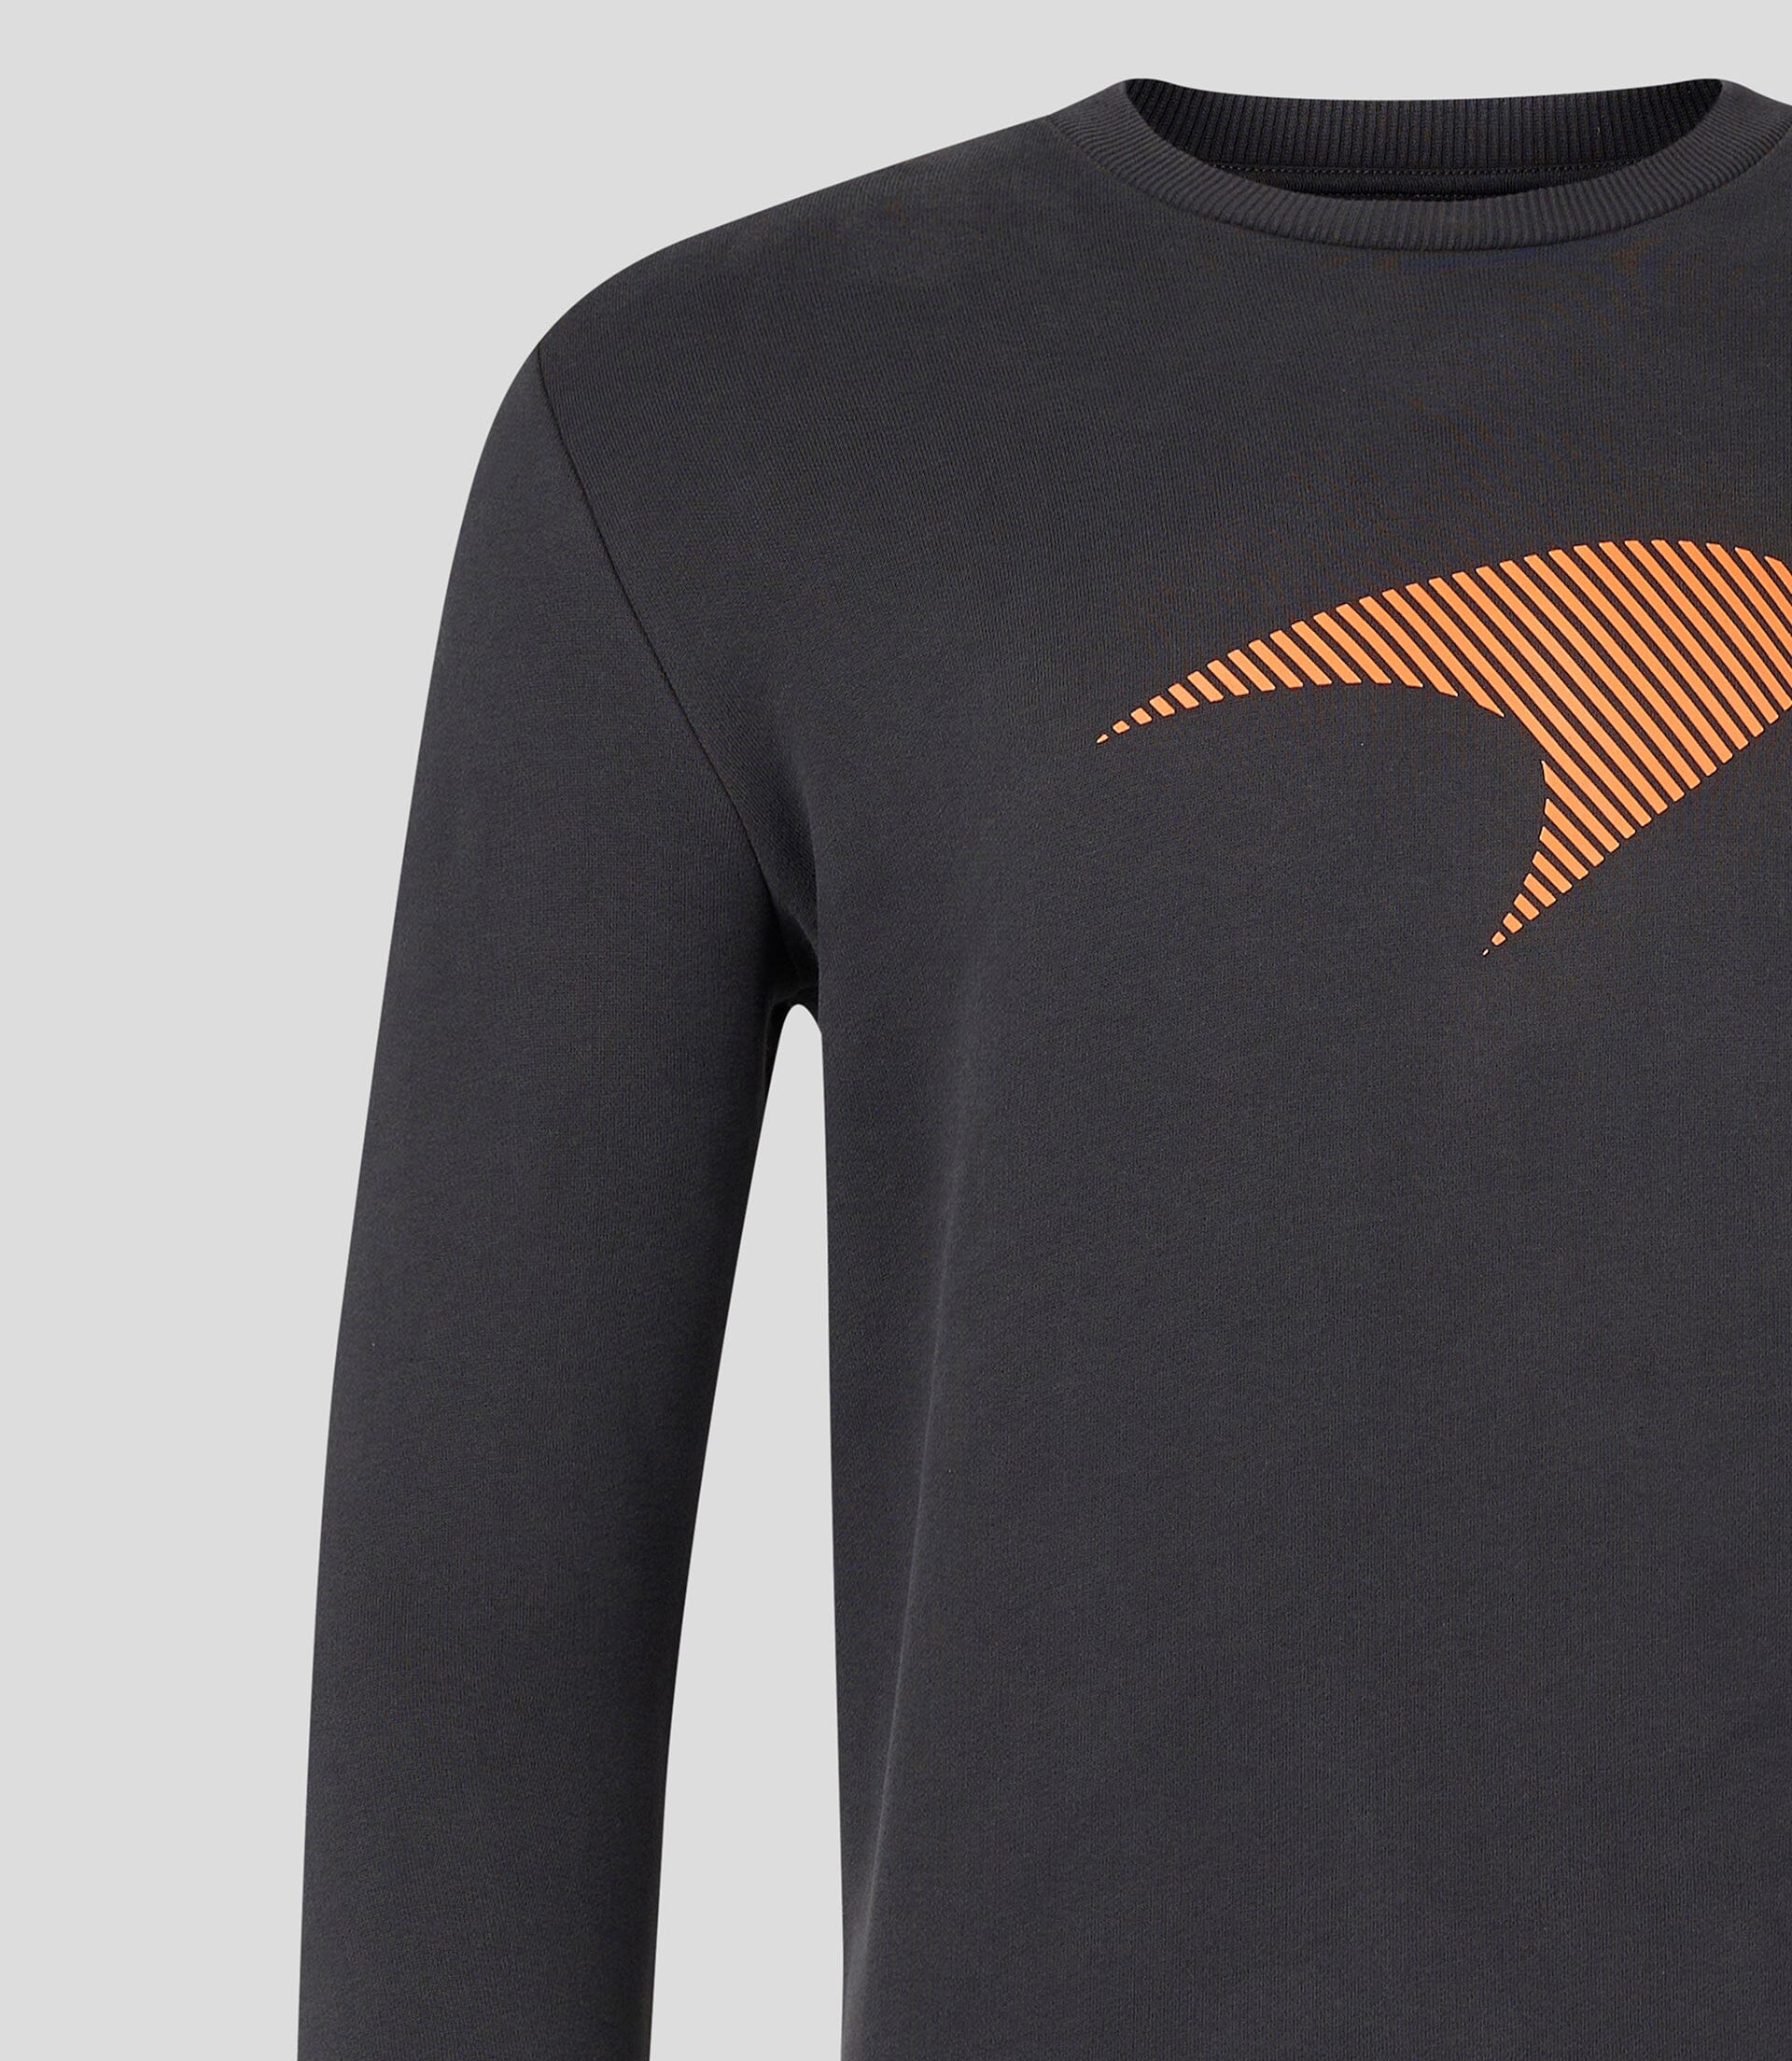 McLaren F1 Speedmark Logo Sweatshirt - Phantom